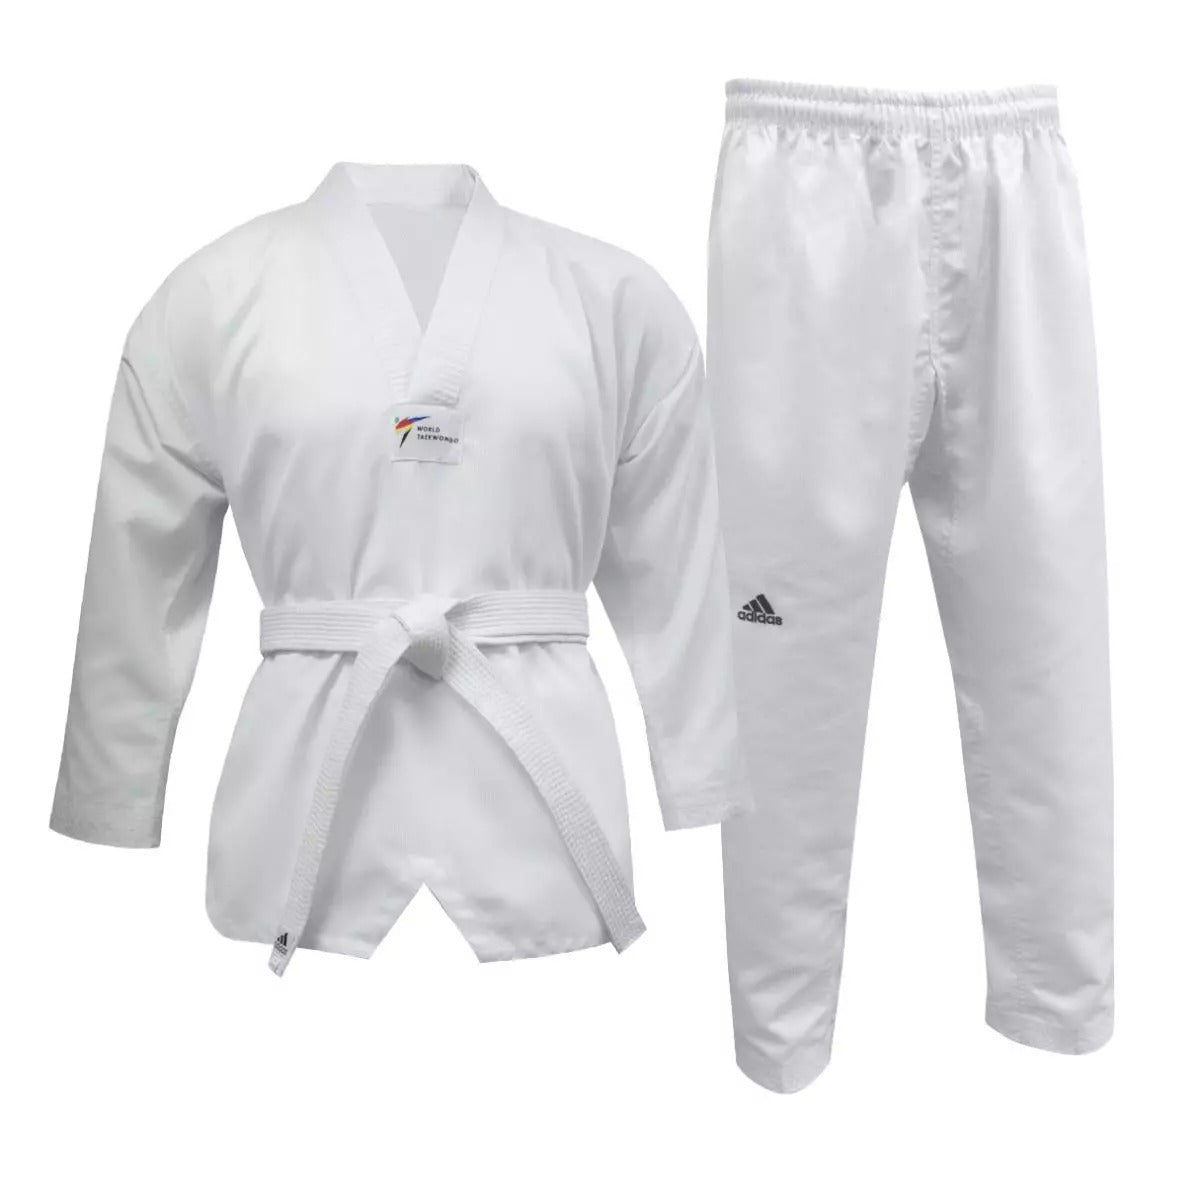 adidas Dobok World Taekwondo Approved Suit